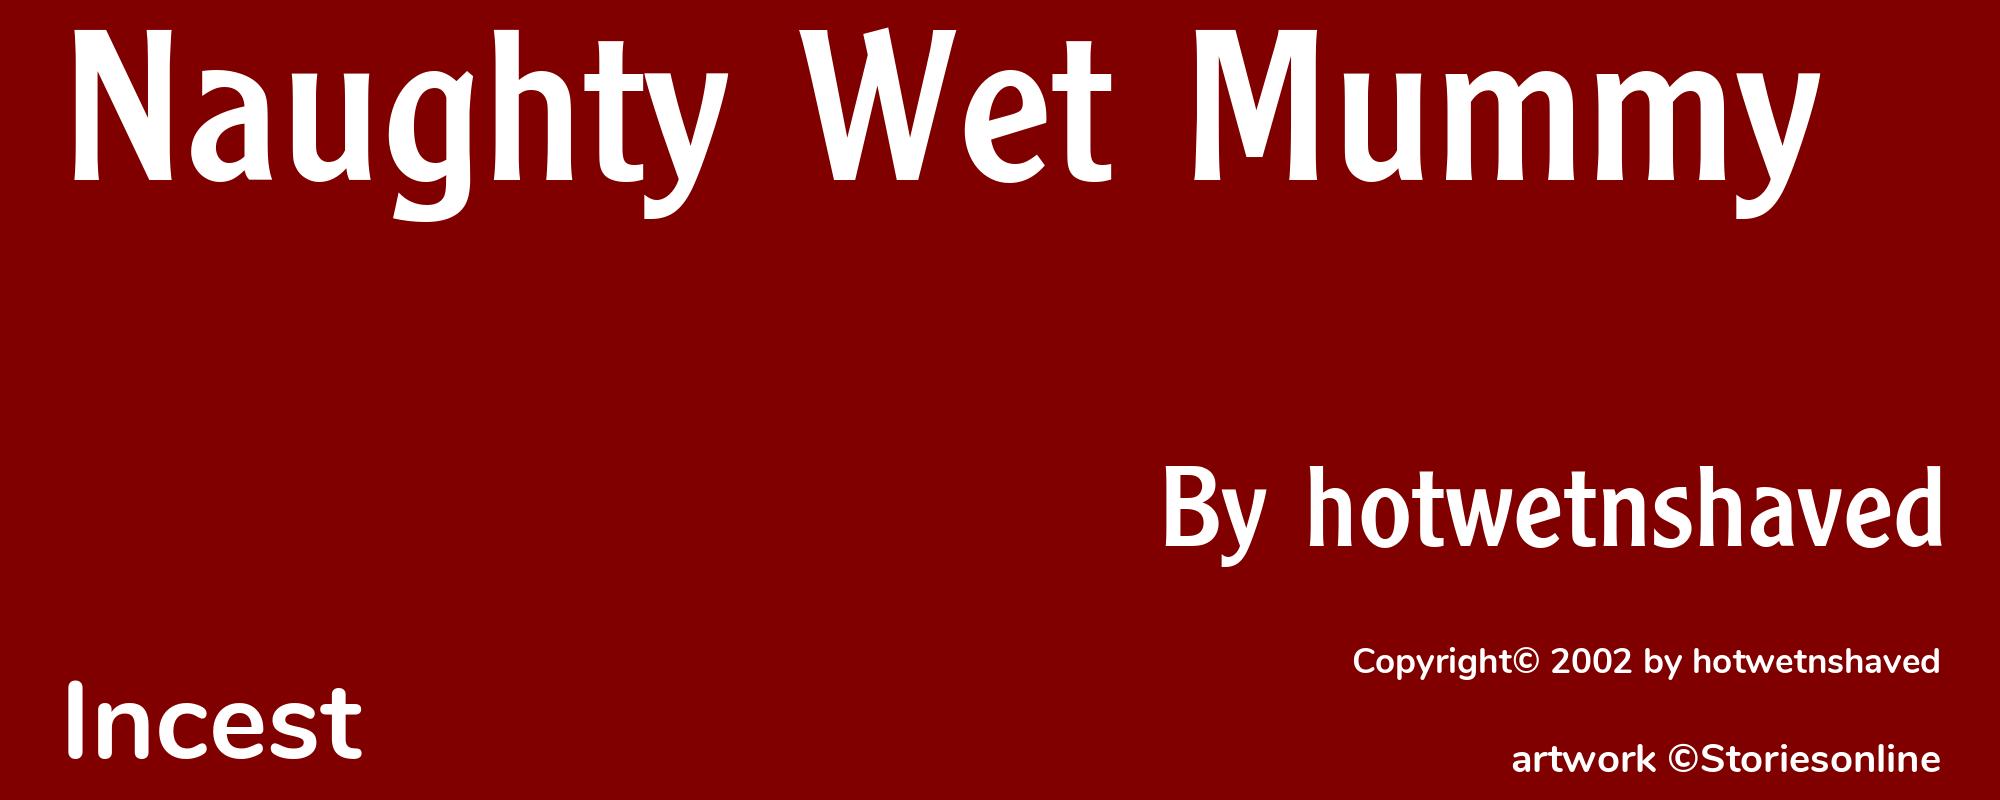 Naughty Wet Mummy - Cover